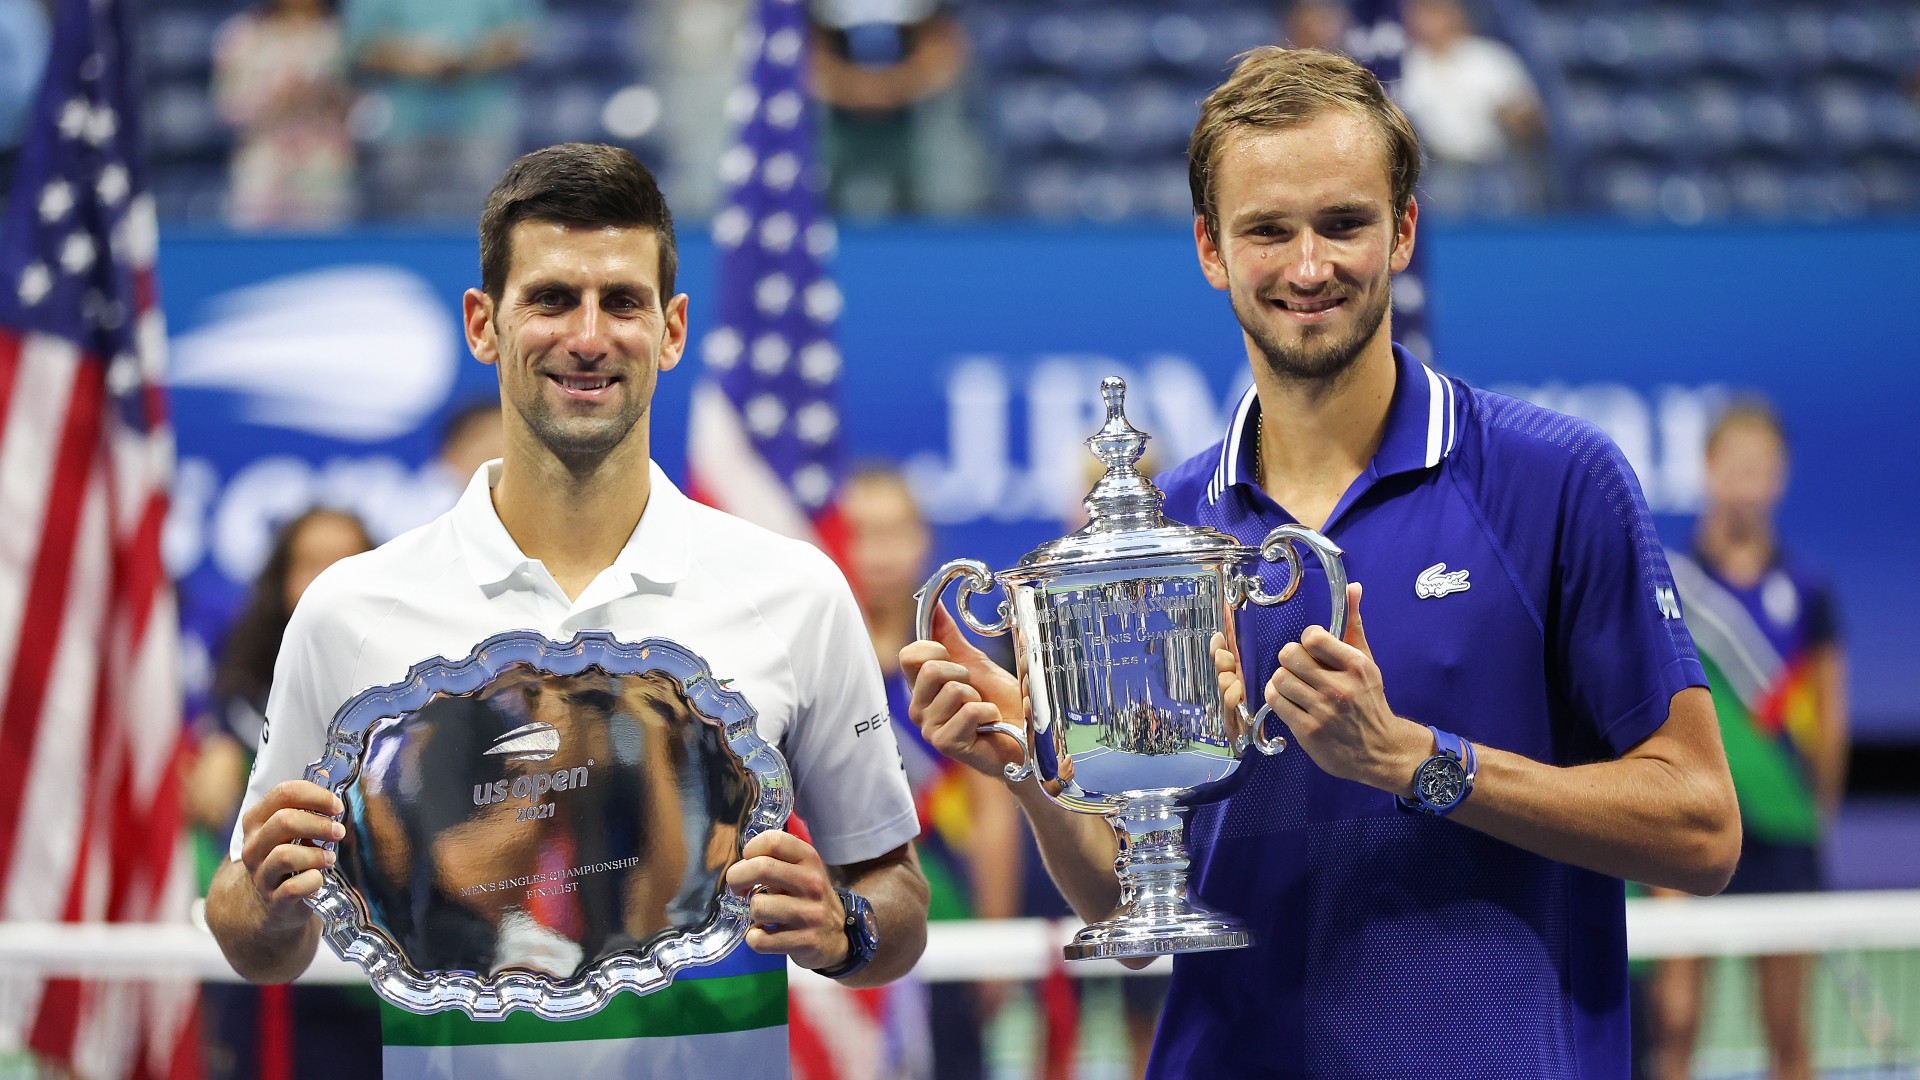 2 năm trước, Medvedev thắng Djokovic trong 3 set liên tiếp. Ảnh: US Open